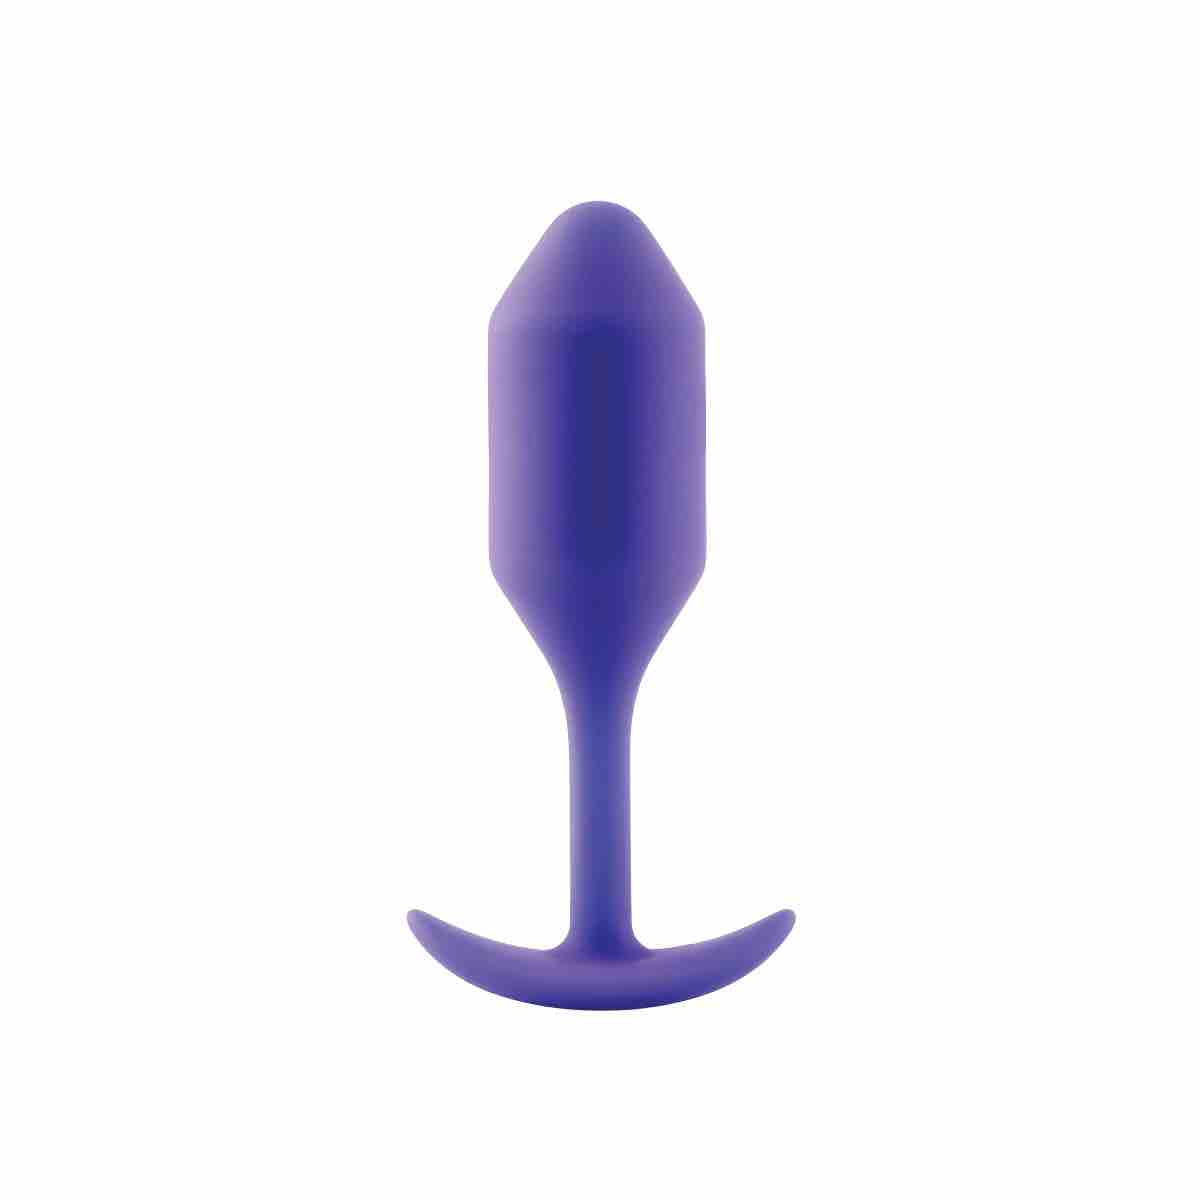 Size 2 purple B-Vibe Snug Plug.